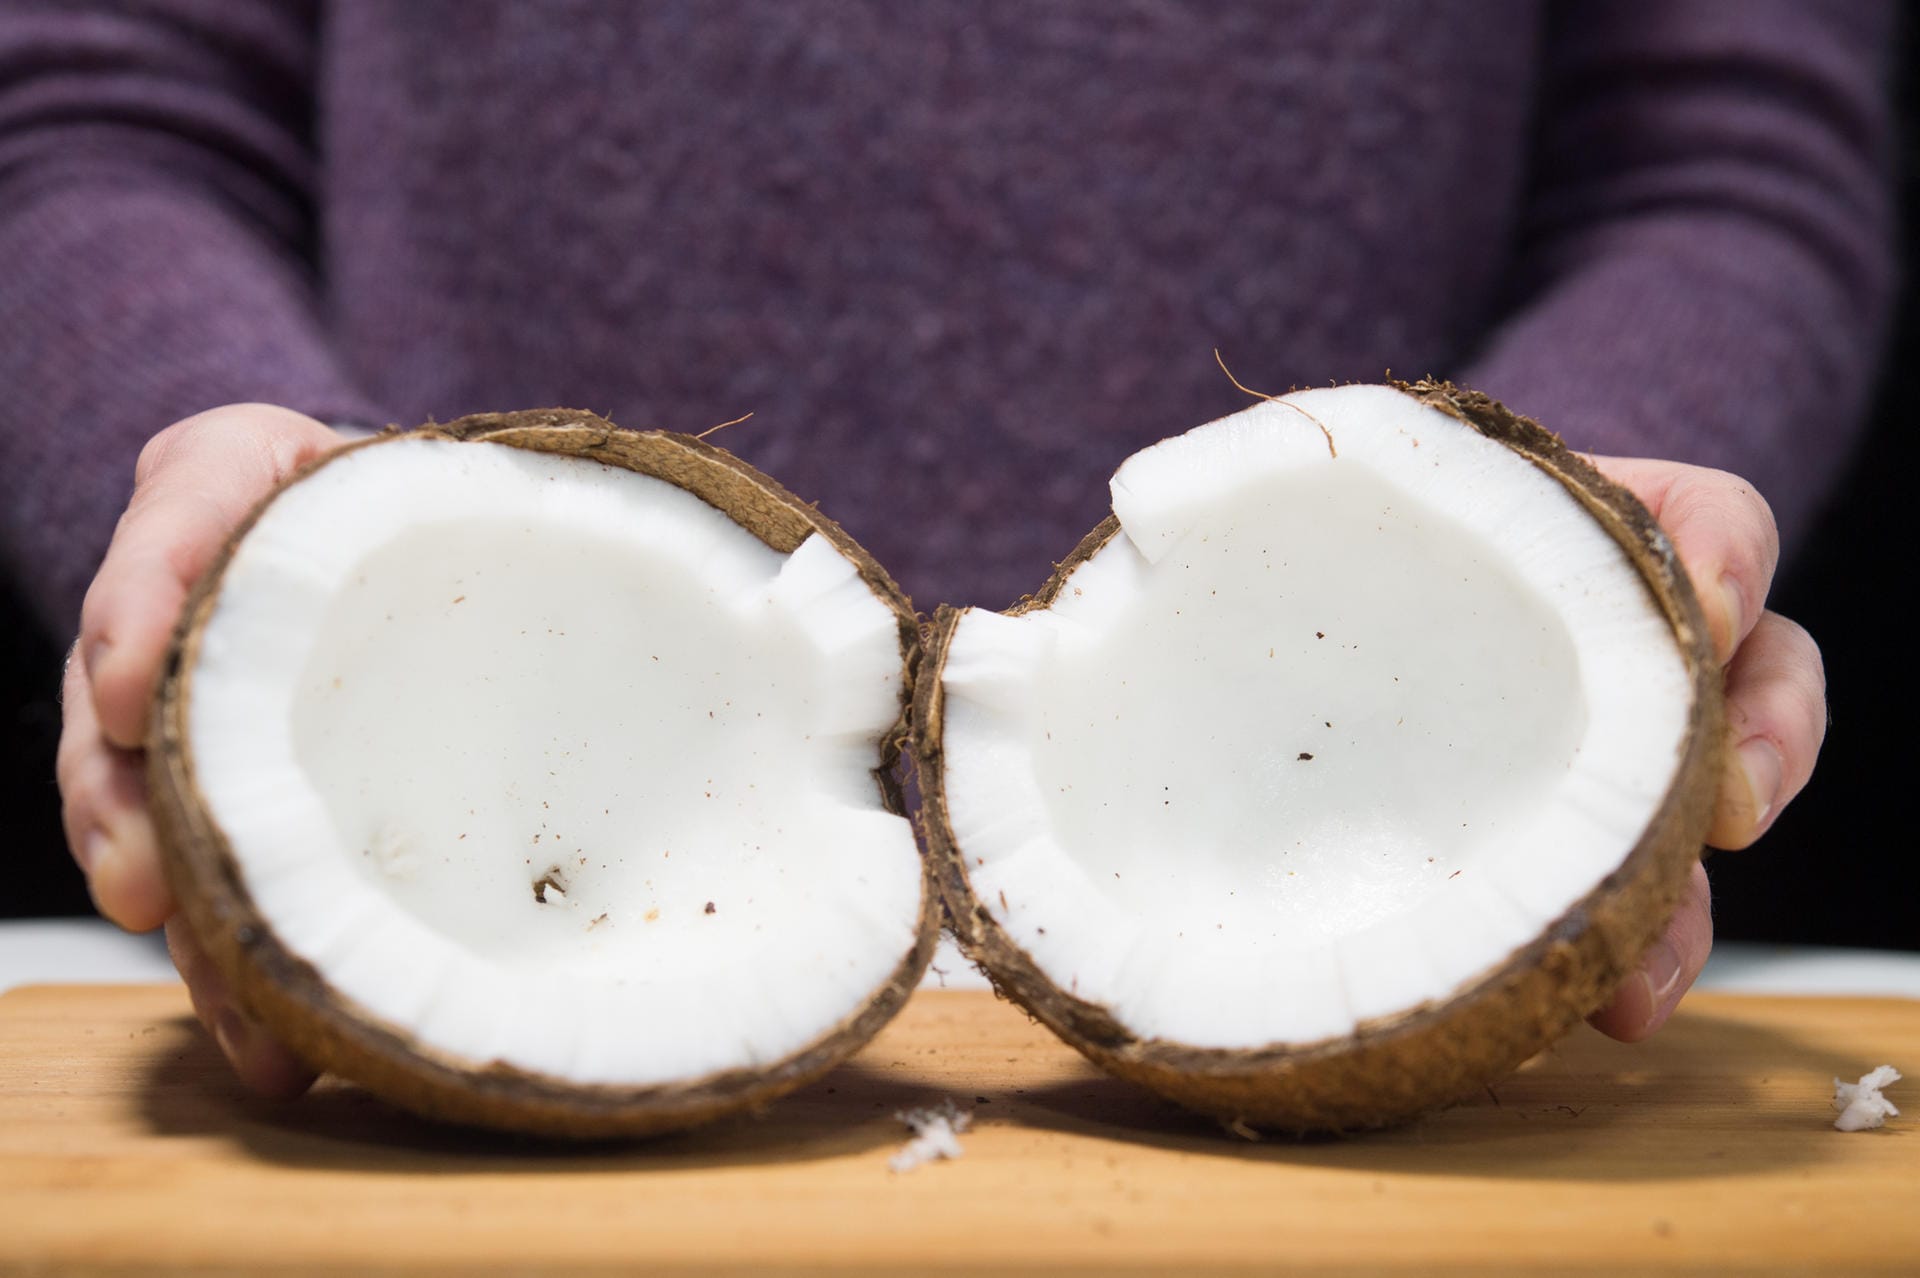 Kokosnuss: Schritt 4 – Ist die Schale geknackt, lässt sich die Kokosnuss in zwei Hälften aufklappen.